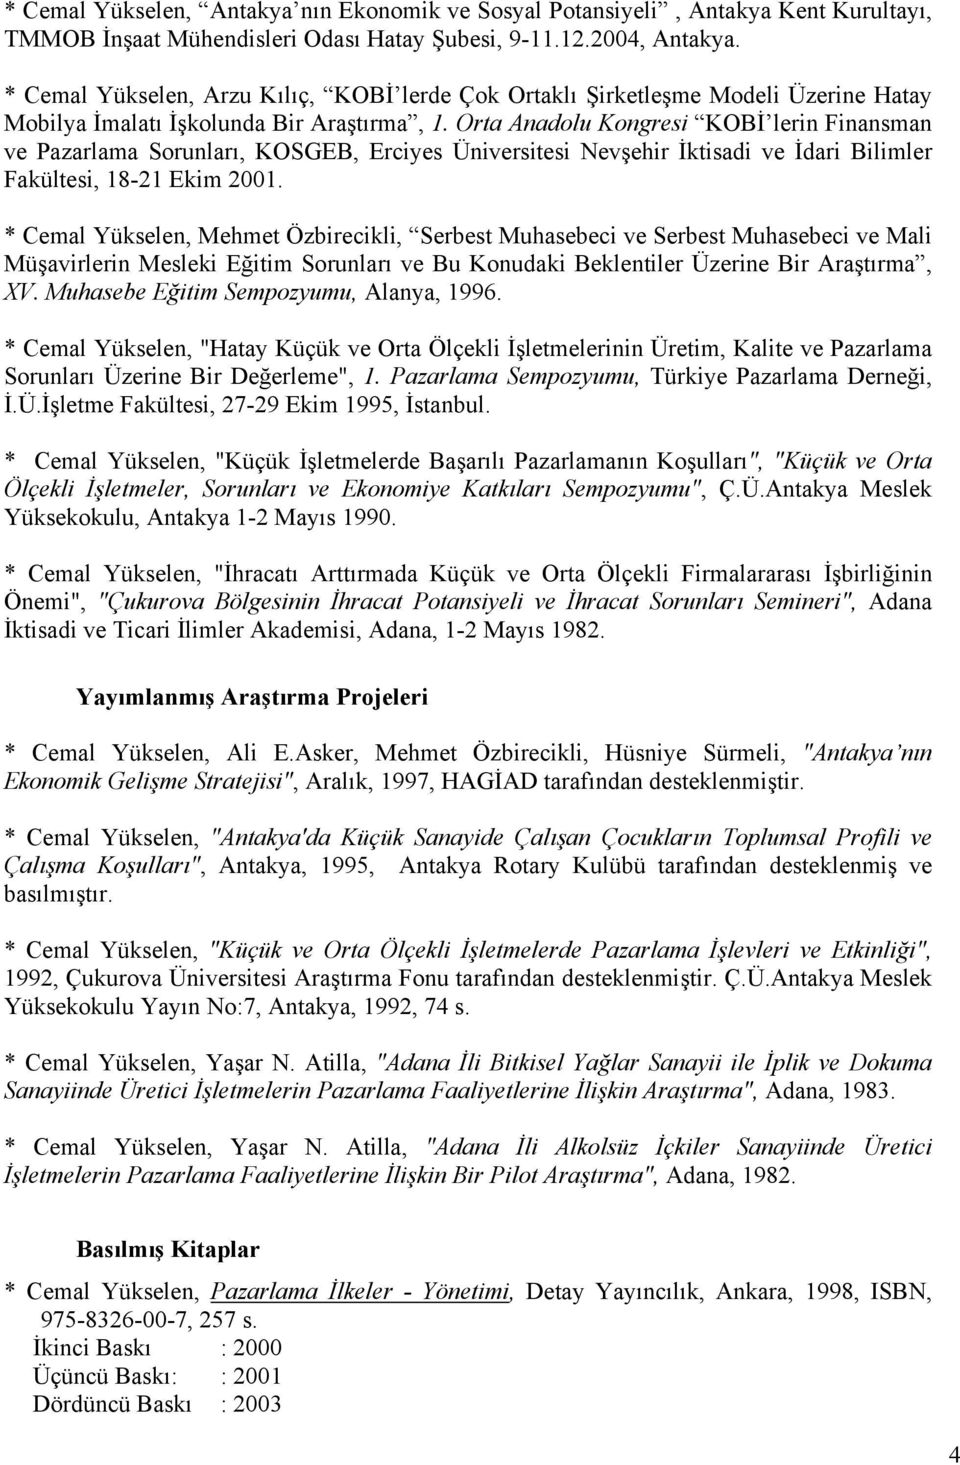 Orta Anadolu Kongresi KOBİ lerin Finansman ve Pazarlama Sorunları, KOSGEB, Erciyes Üniversitesi Nevşehir İktisadi ve İdari Bilimler Fakültesi, 18-21 Ekim 2001.